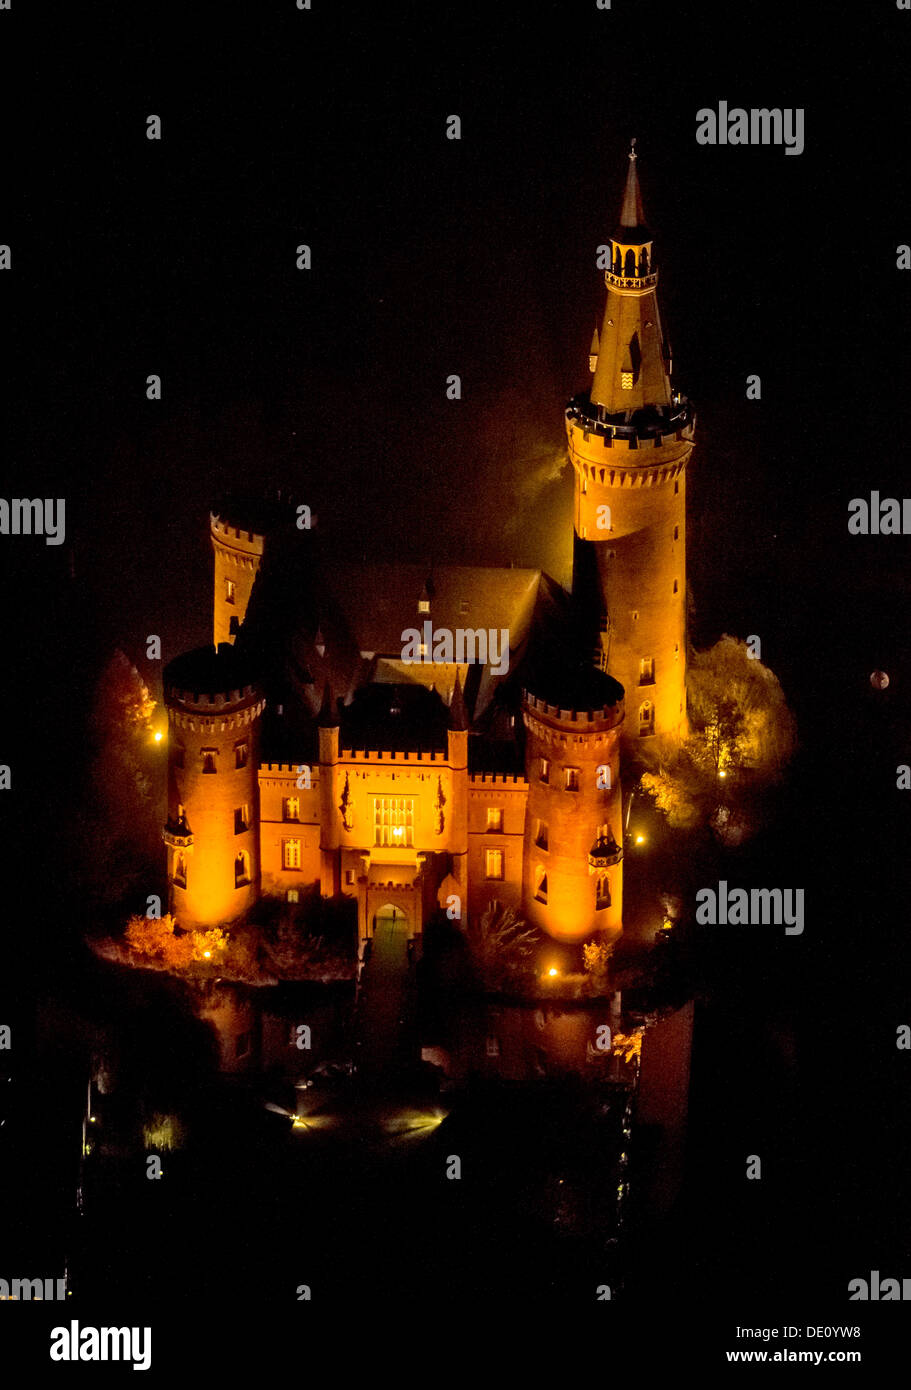 Vue aérienne du château de Moyland, néo-gothique, photo de nuit, Bedburg-Hau, Rhénanie du Nord-Westphalie Banque D'Images